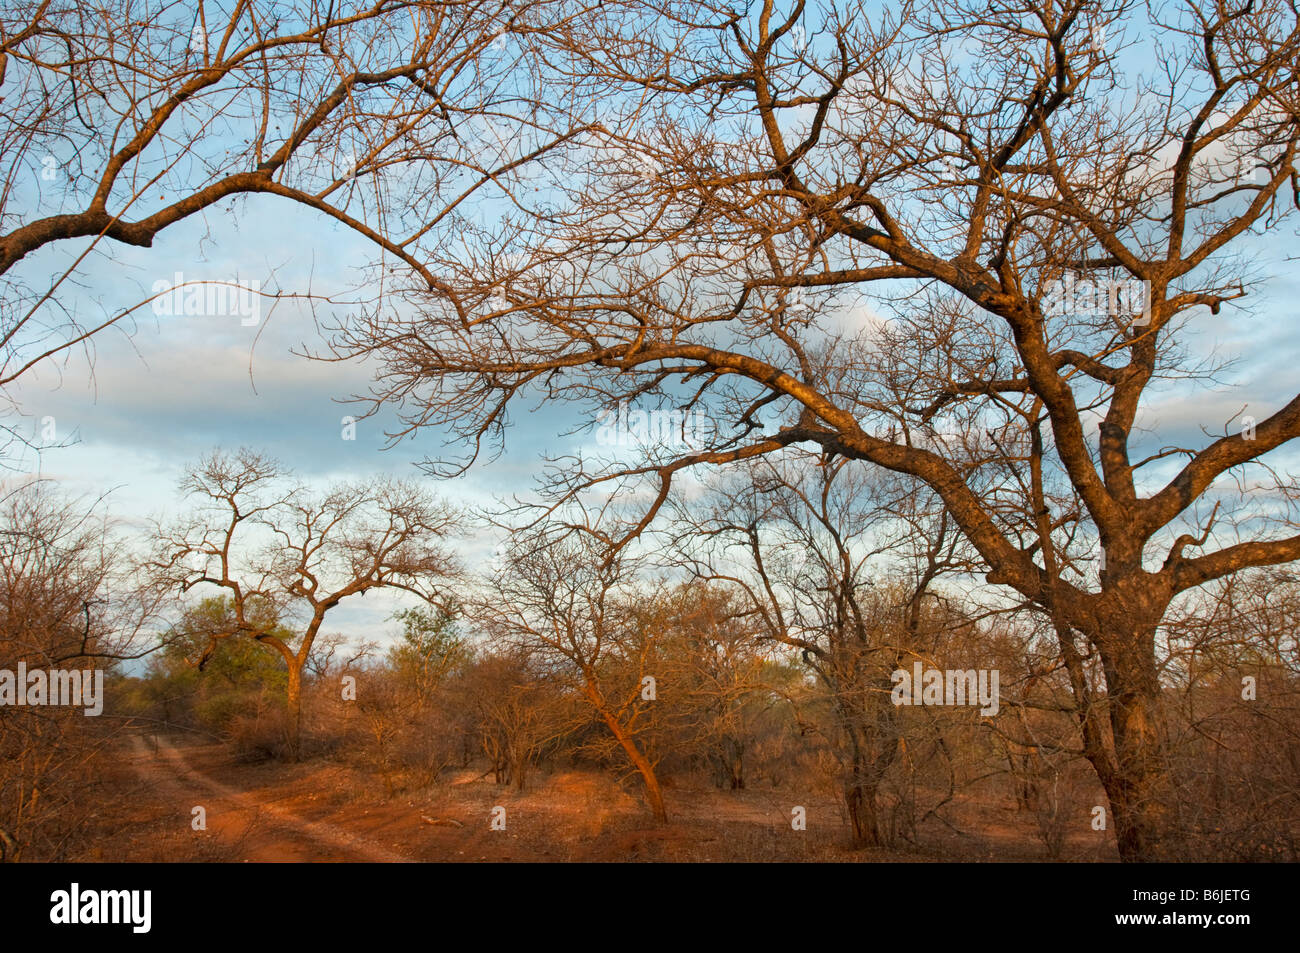 La masse de la terre rouge du sud afrique-savanne savane bush afrique du sud paysage forestiers hors route acacia Robinia acacia arbres bosses Banque D'Images